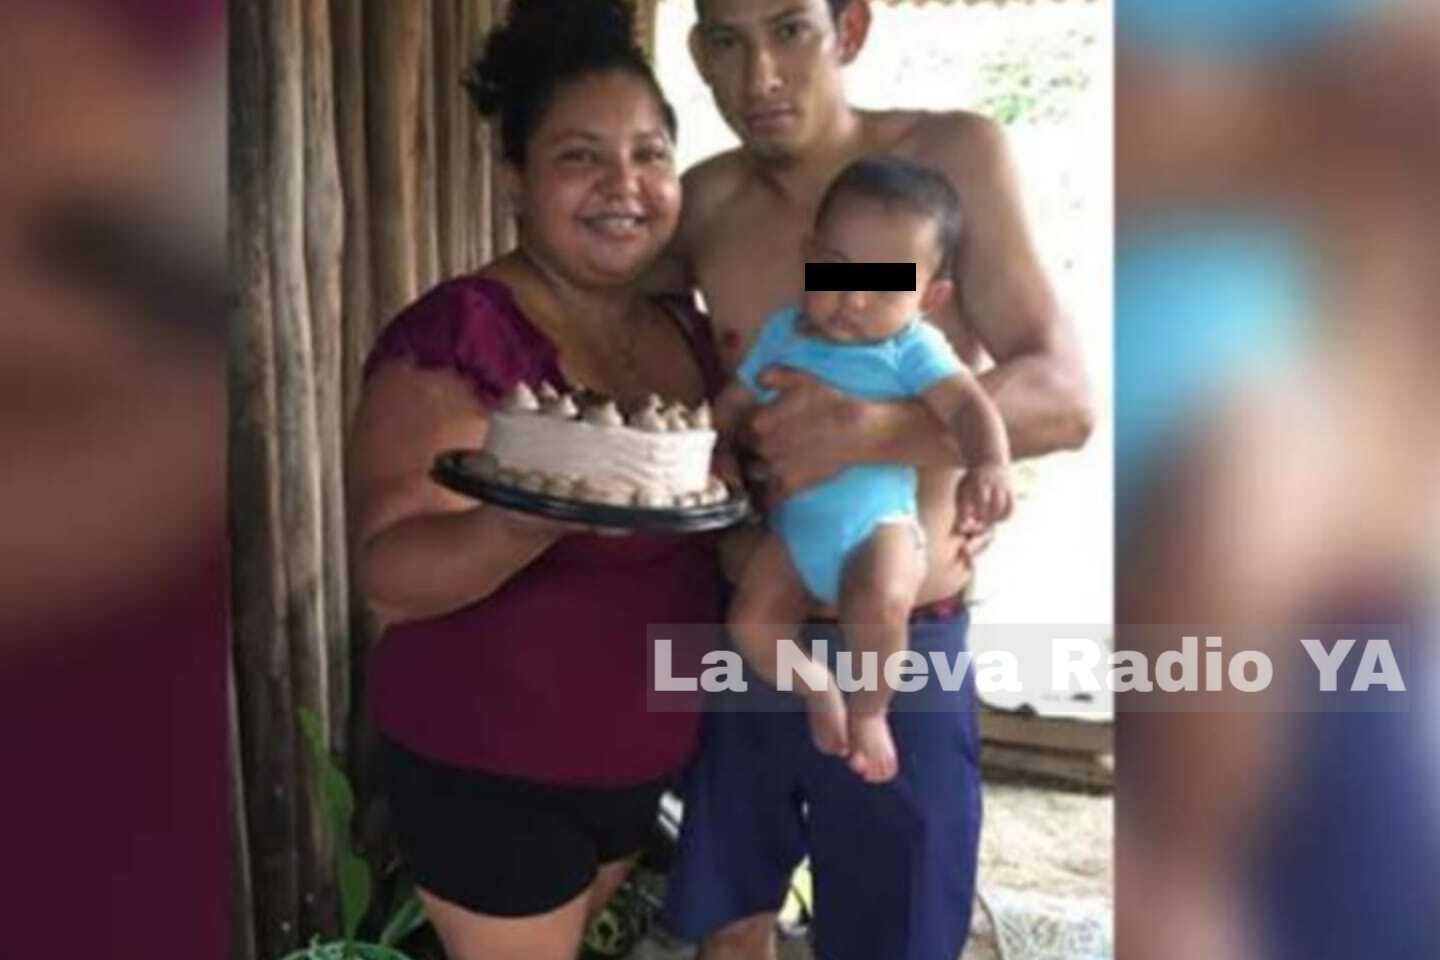 El nicaragüense Juan Rafael Montoya Blandón y su familia están desaparecidas en Costa Rica